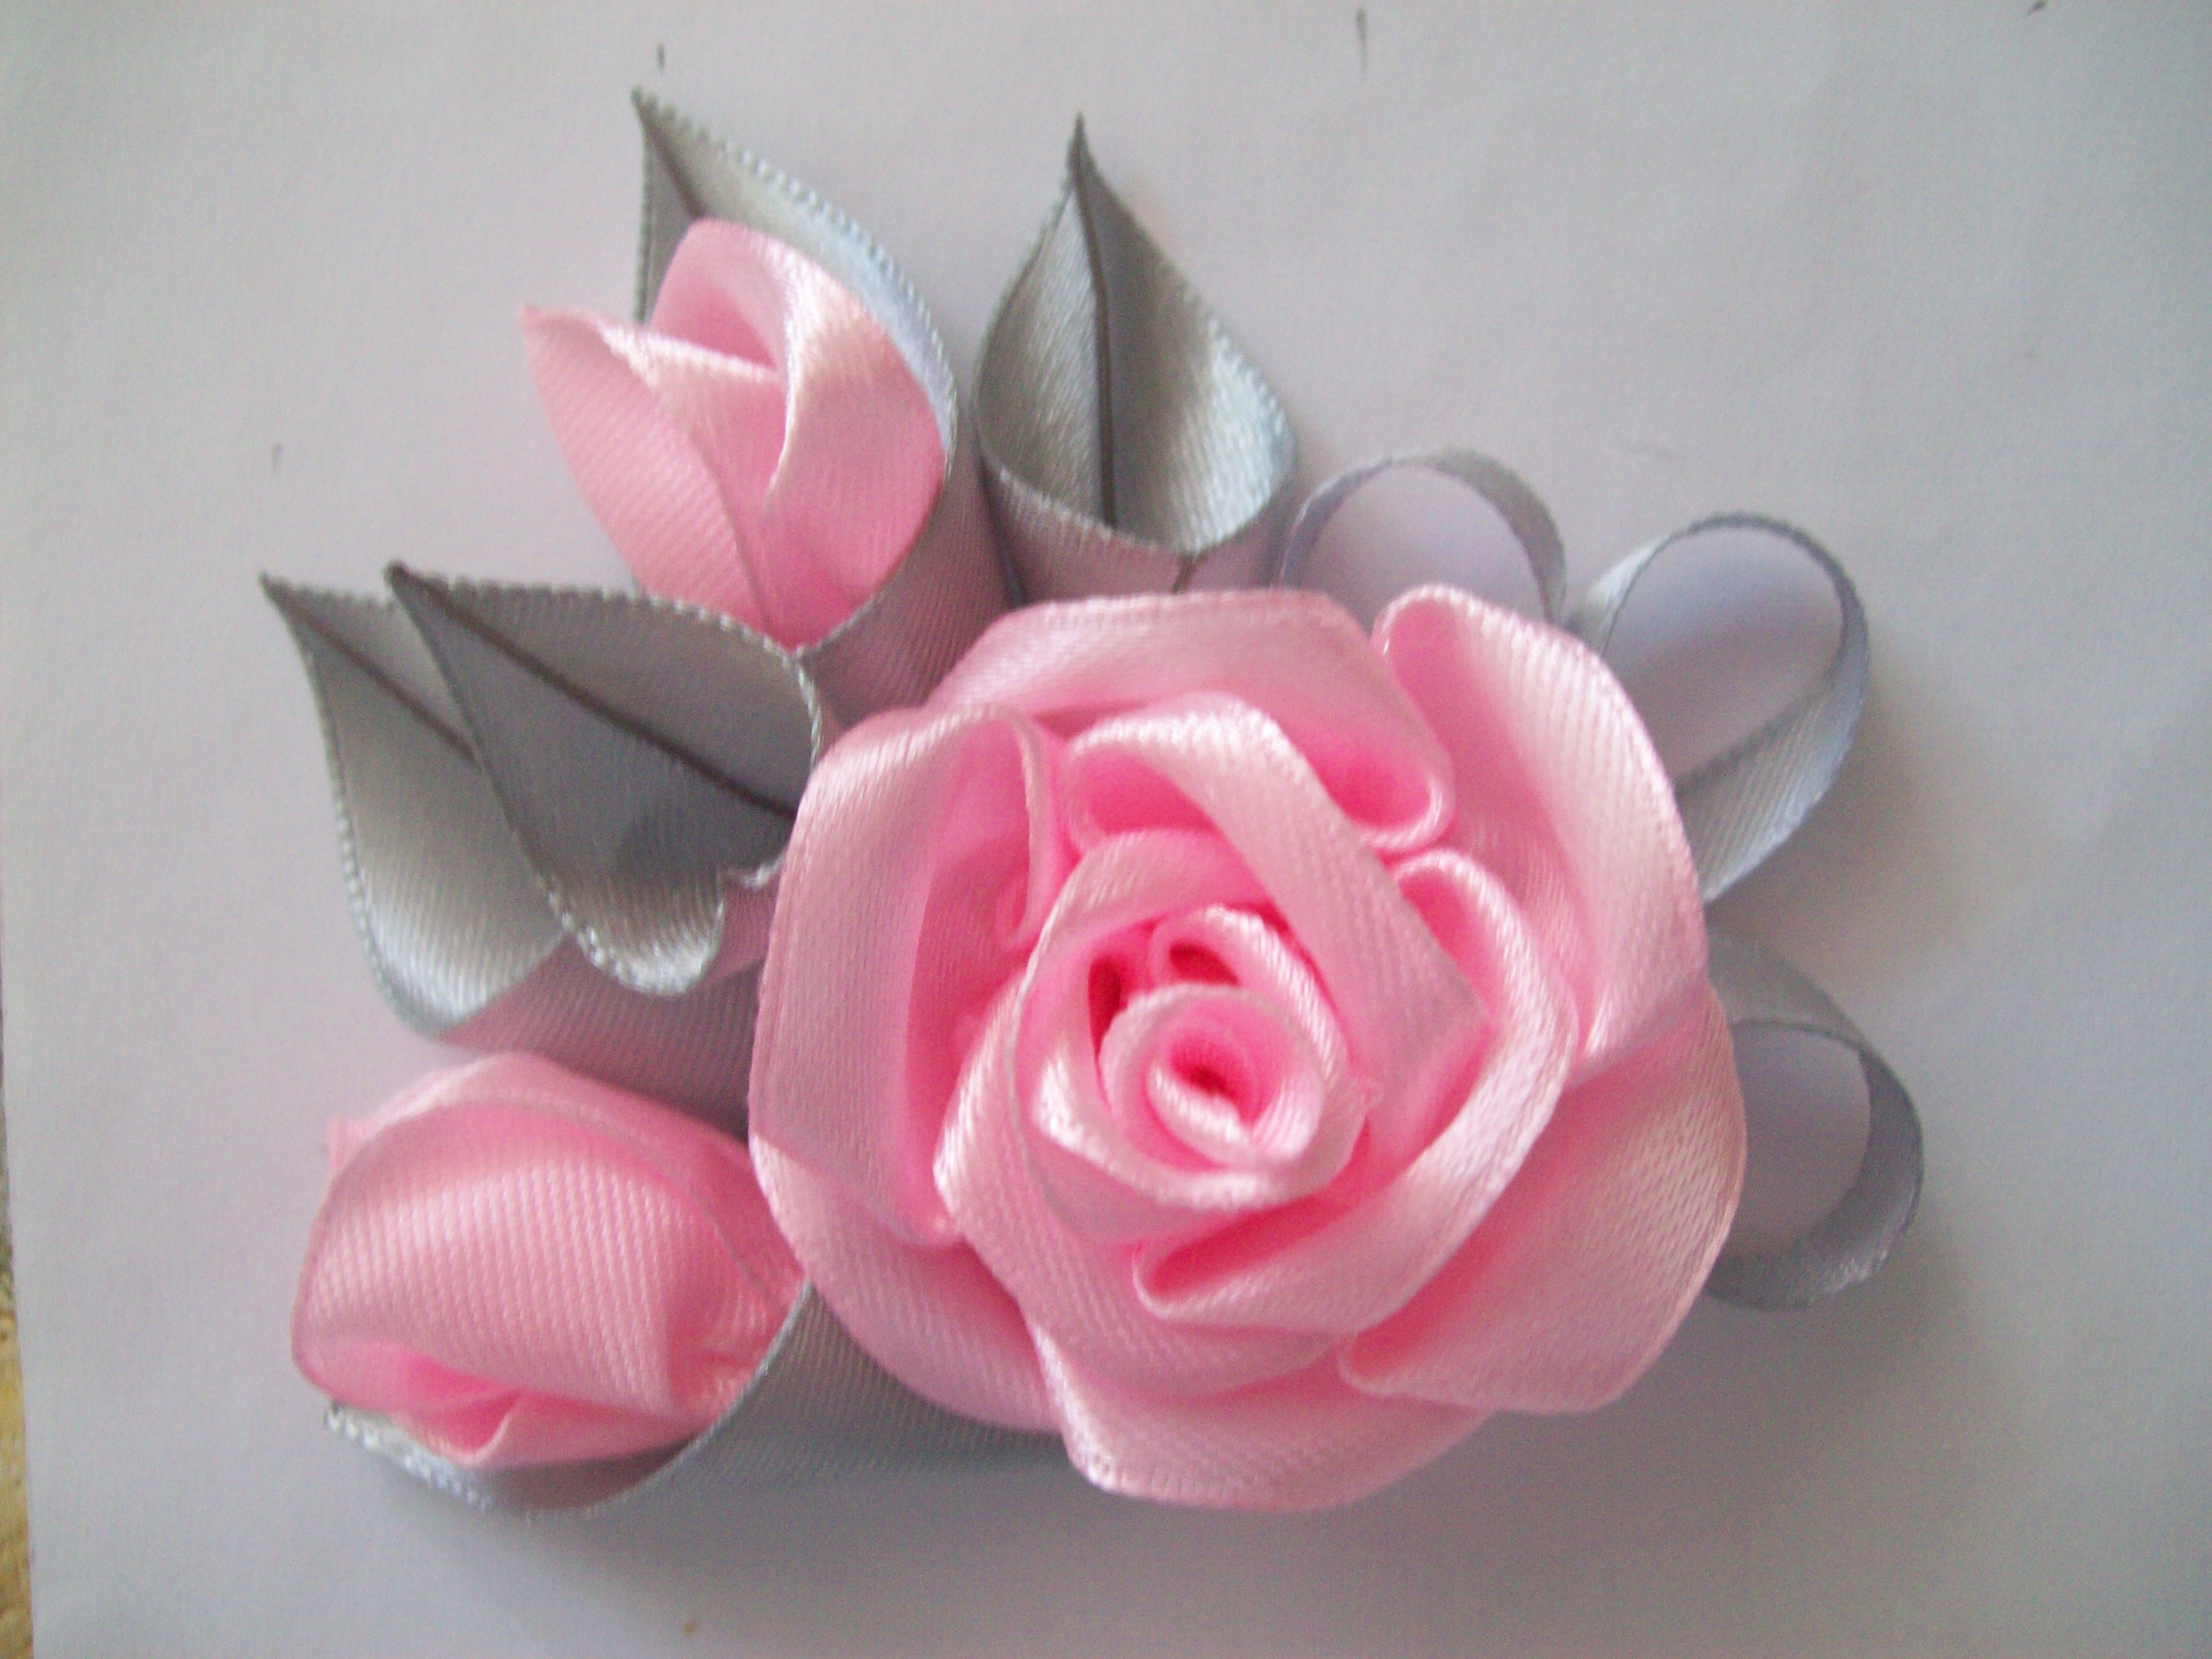 Цветы из лент своими руками: пошаговая инструкция по изготовлению роз идругих элементов декора